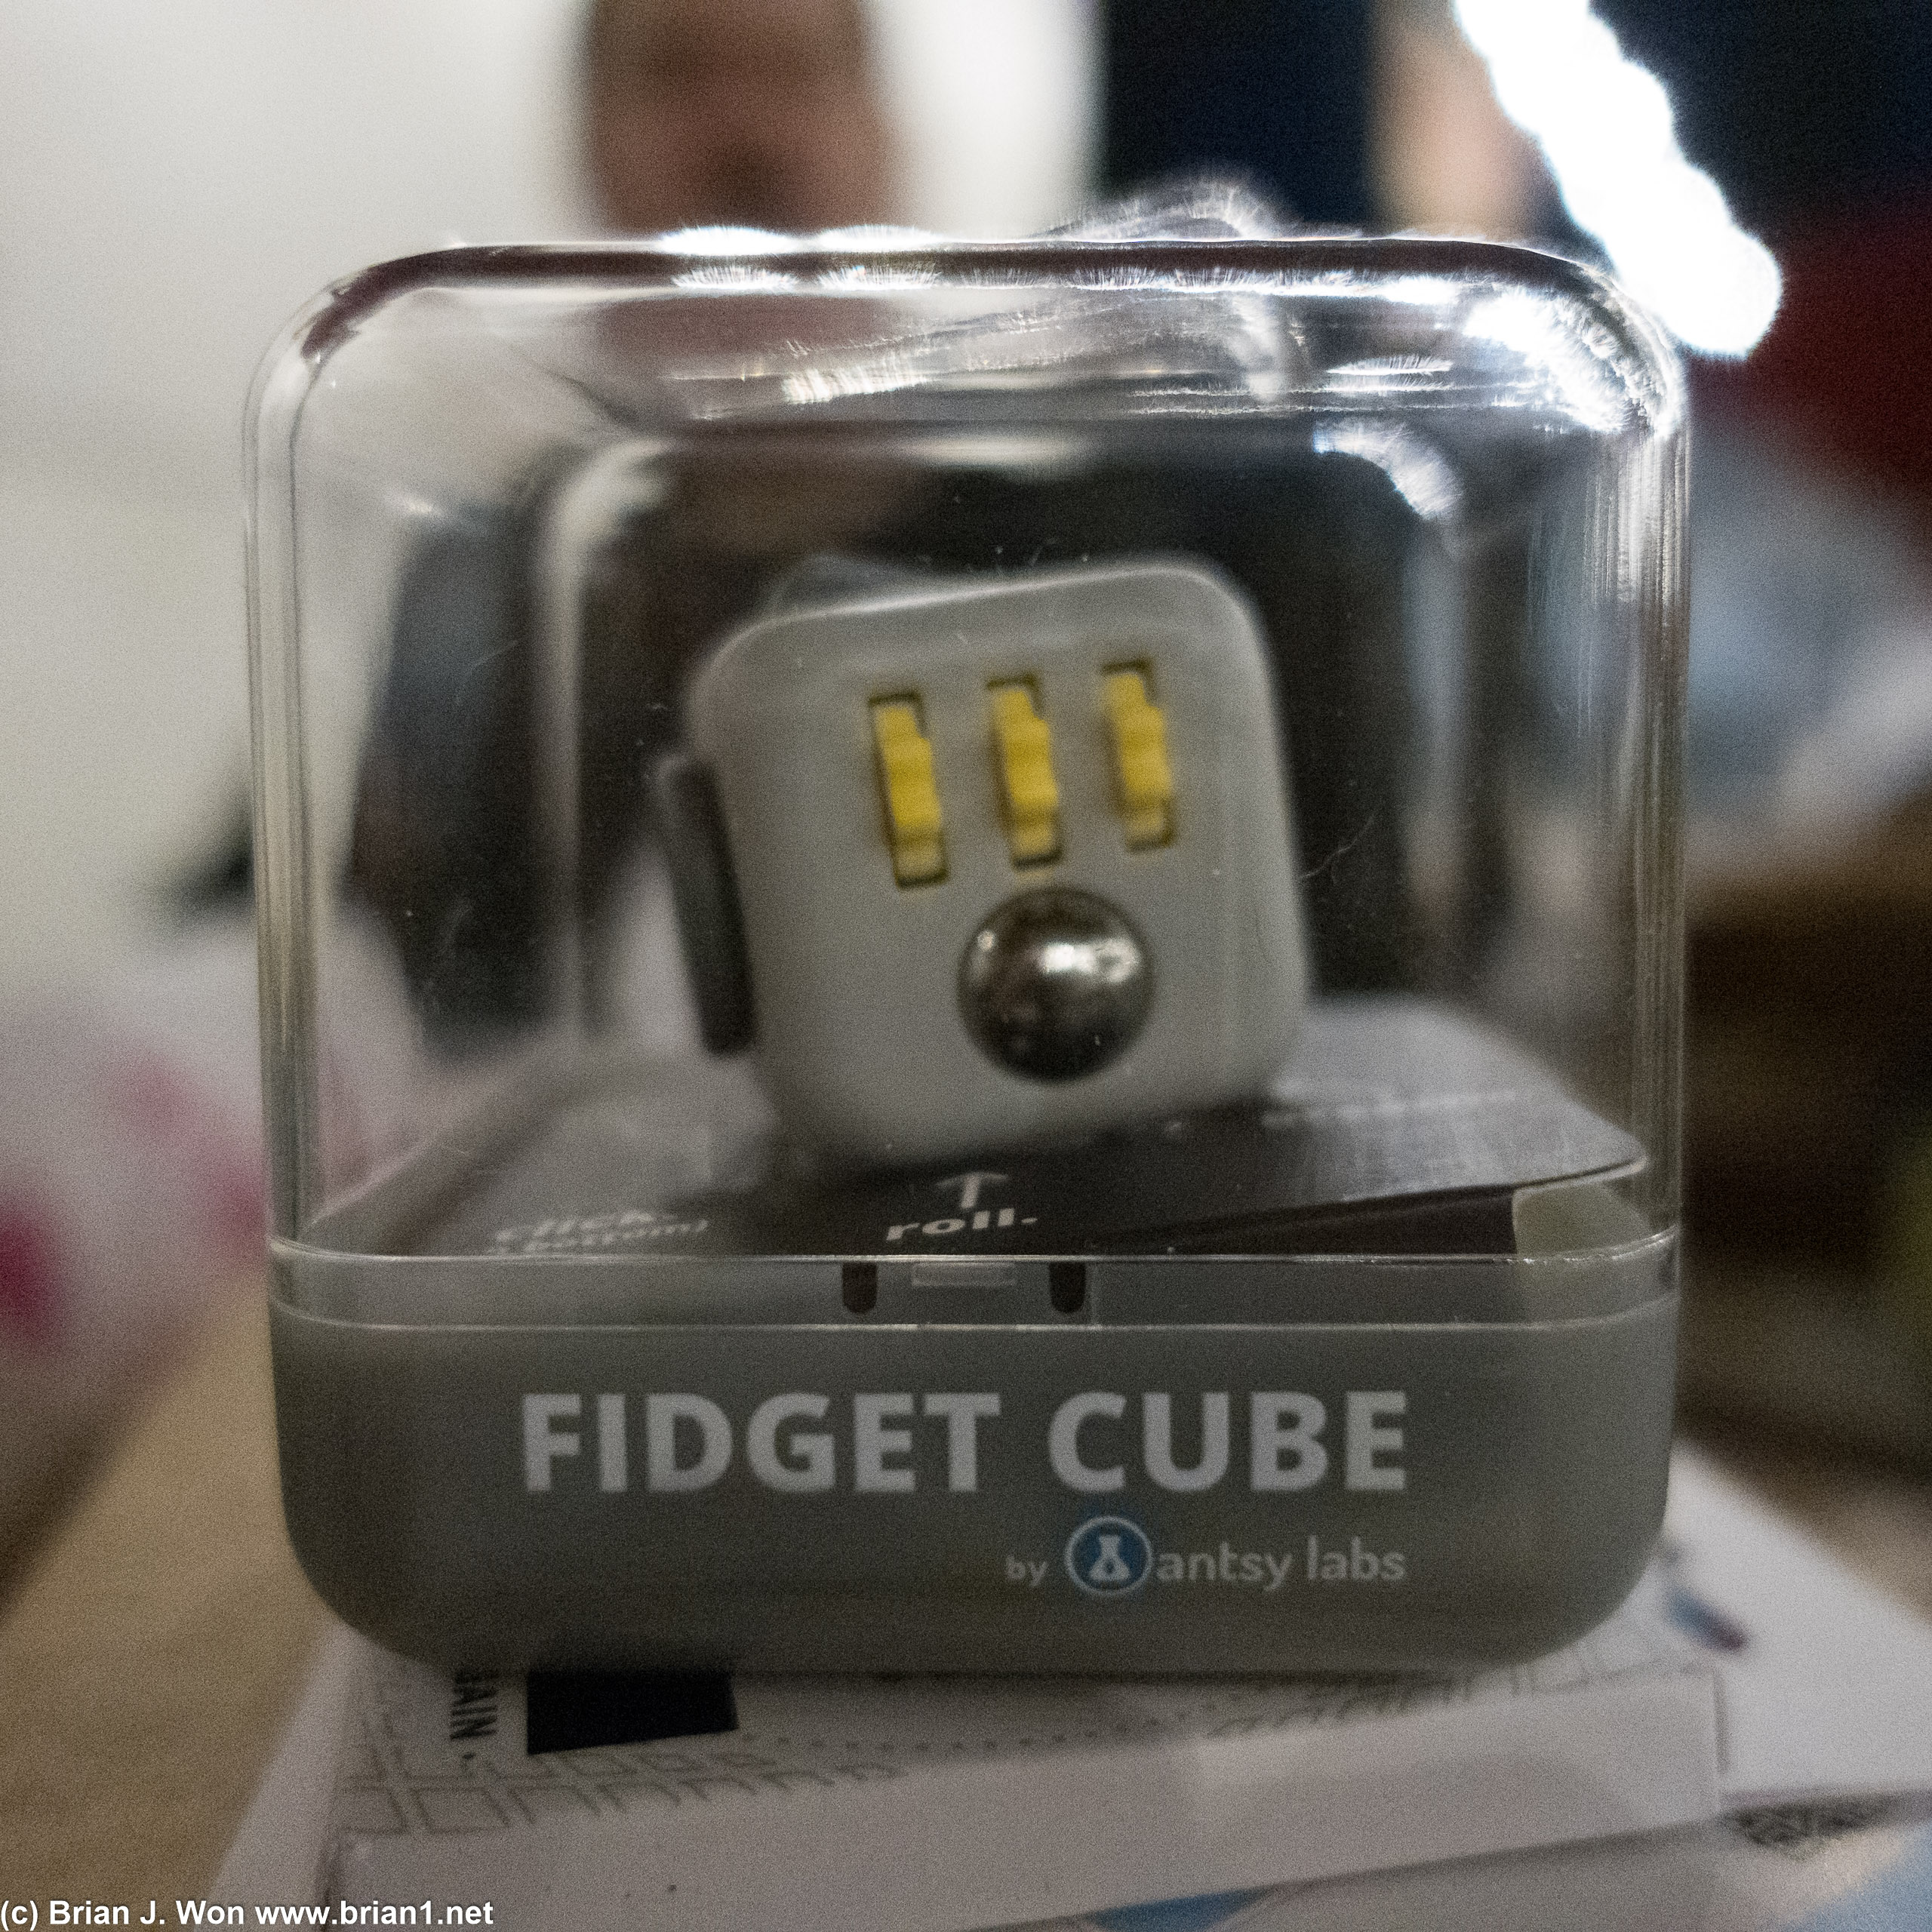 Genuine Fidget Cube!